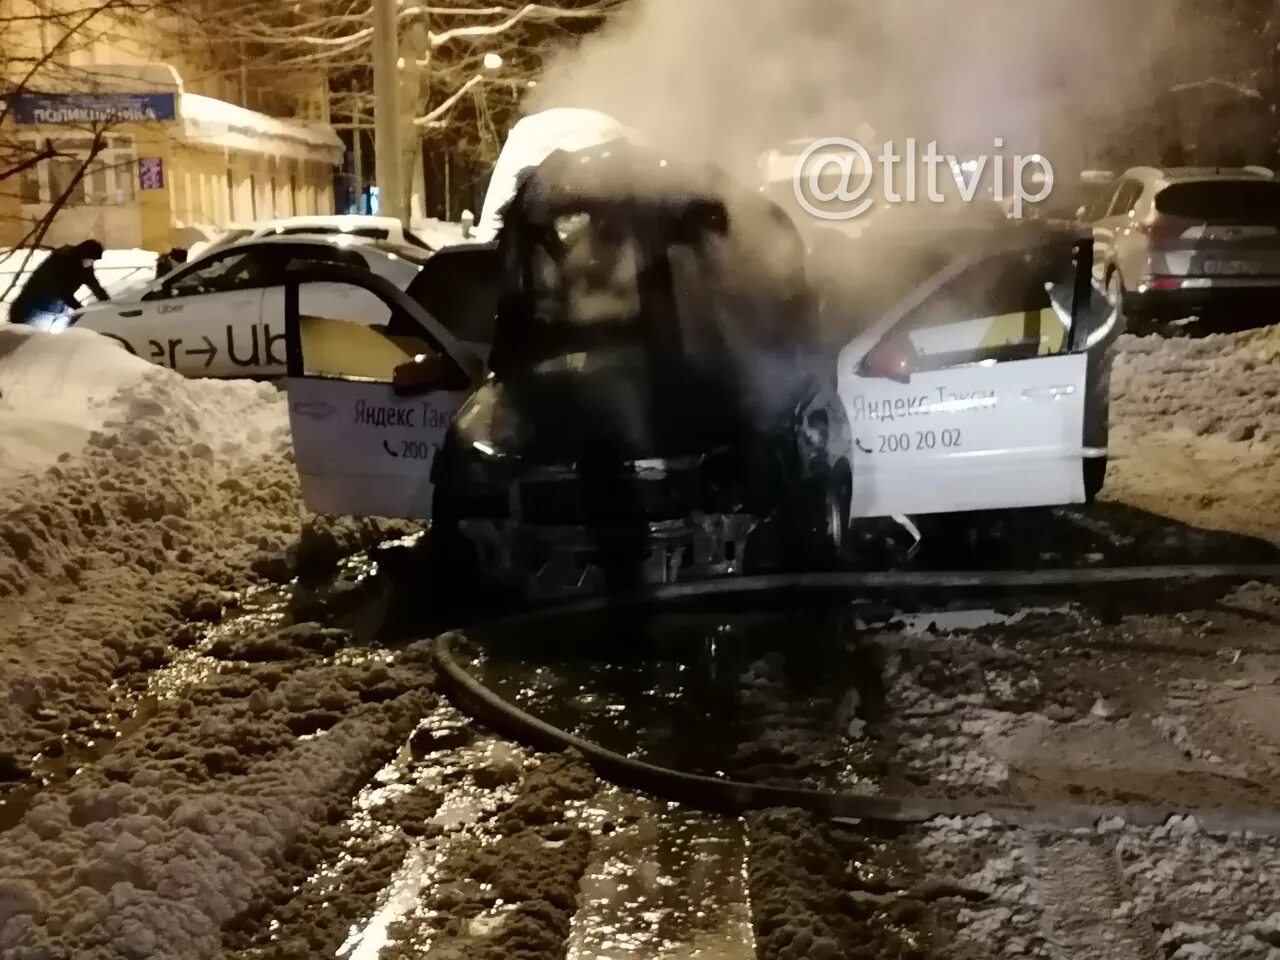 Самара сегодня новости последнего часа. Сгорела машина в Самаре сегодня. ДТП ул. Нагорная Самара. В Самаре сгорел автомобиль сегодня.